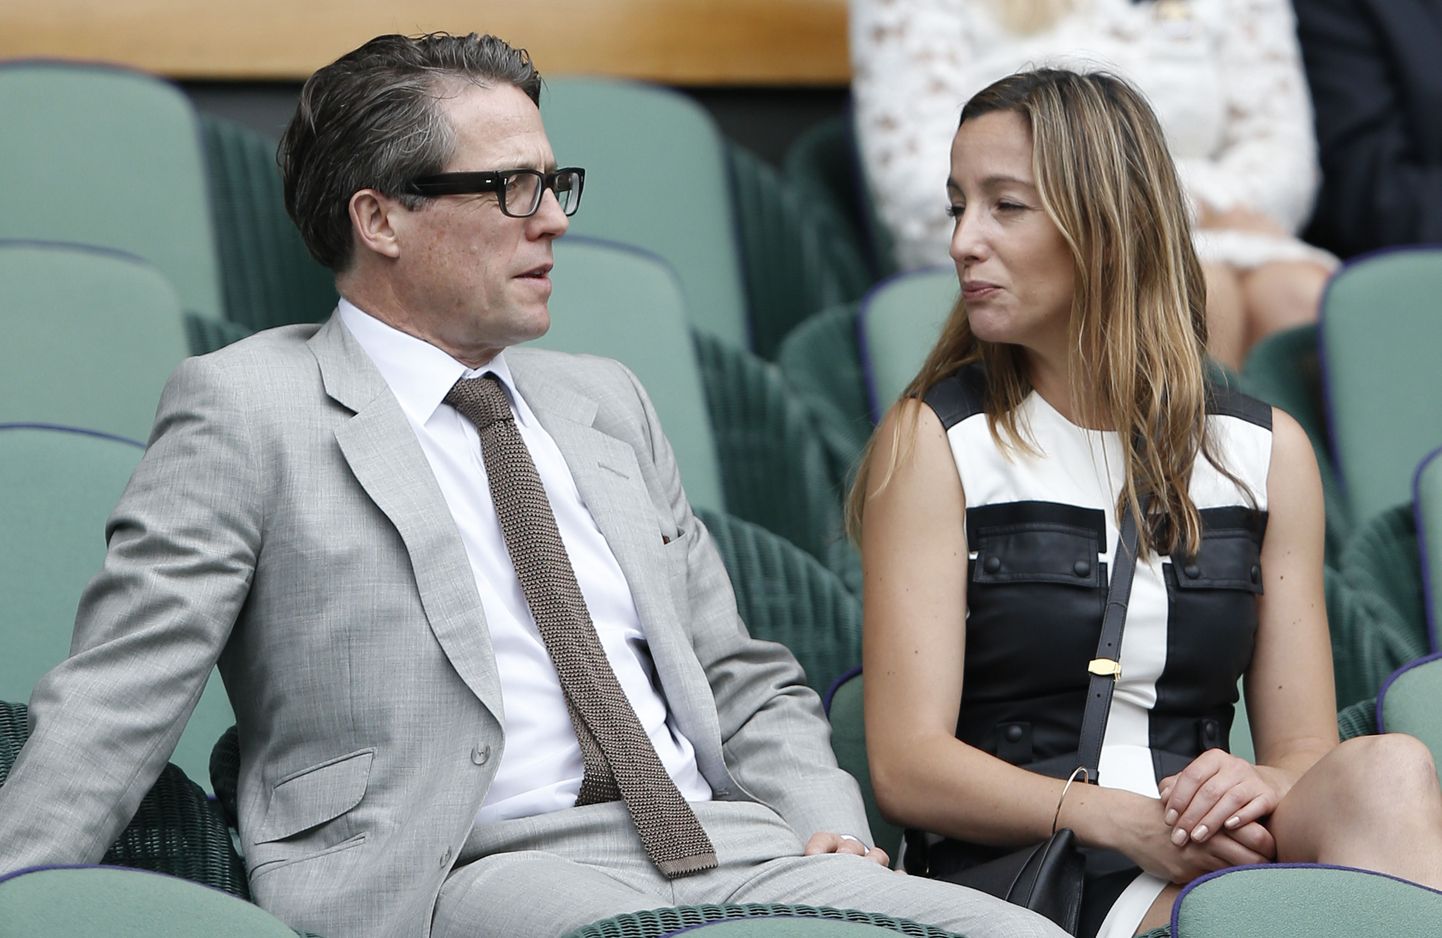 Briti näitelja Hugh Grant (vasakul) ja Anna Eberstein vaatamas Wimbledoni finaali 2015. aastal.